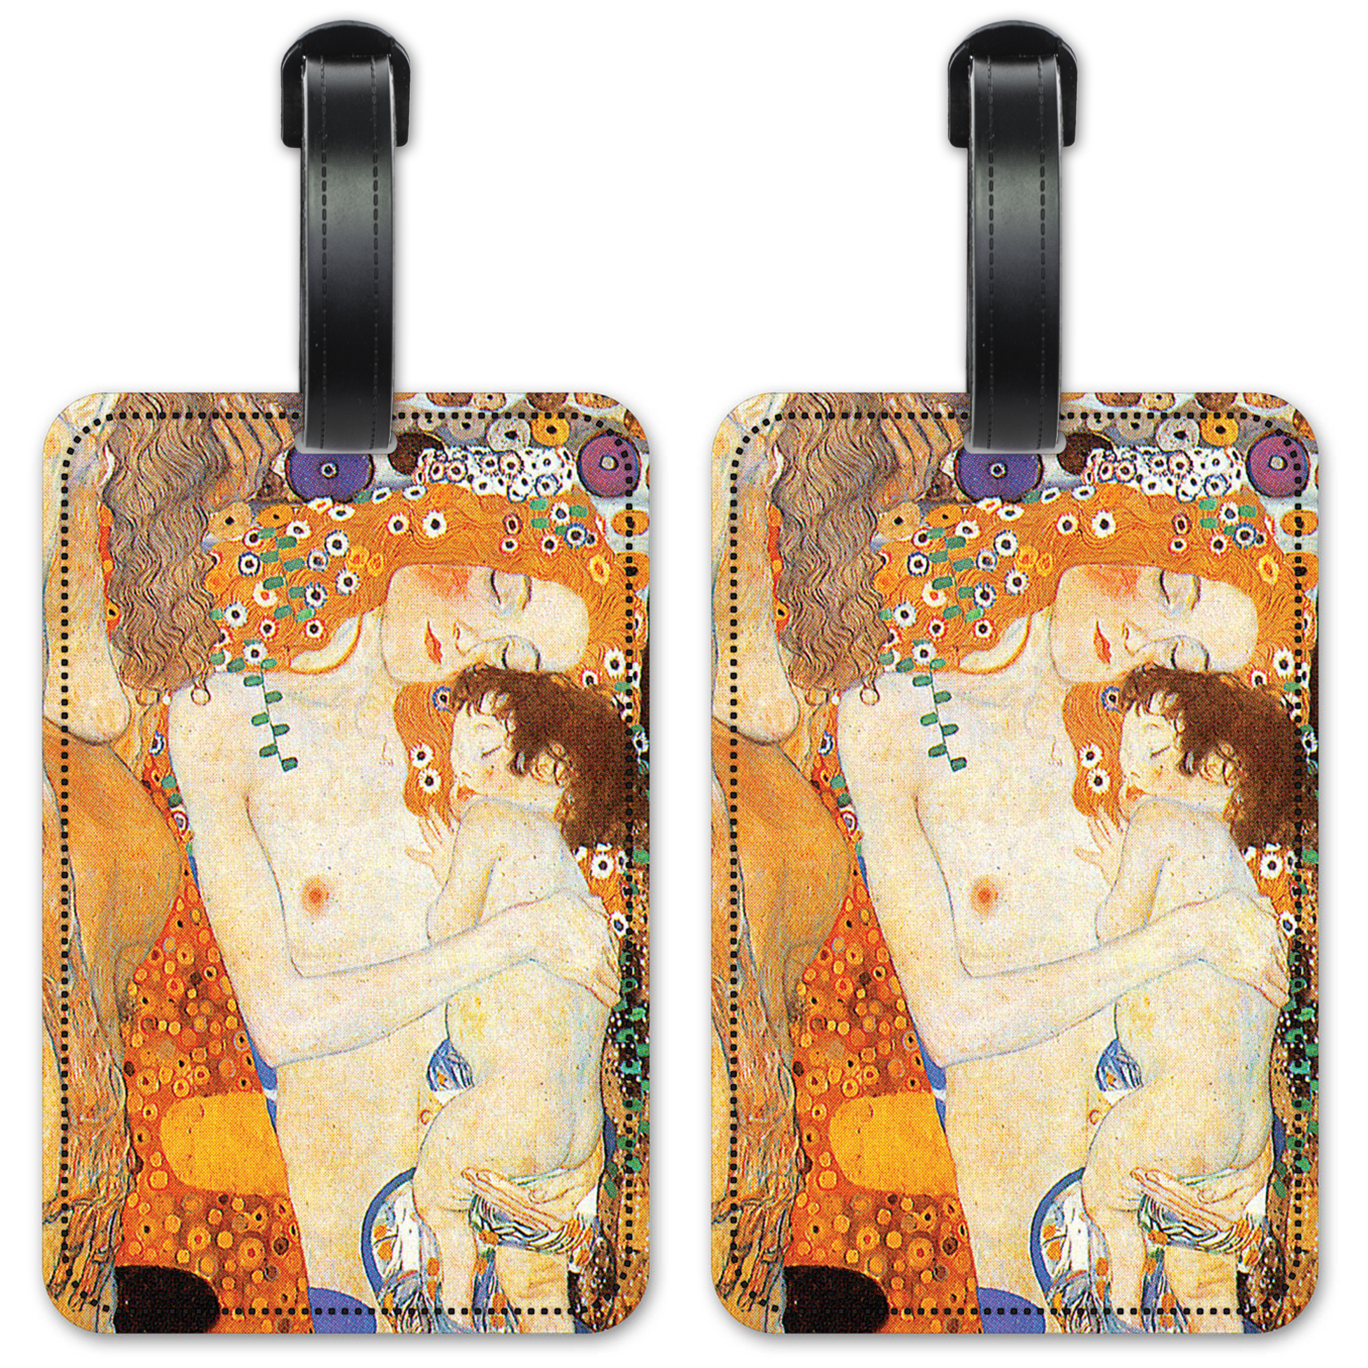 Klimt: Ages of Women - #53